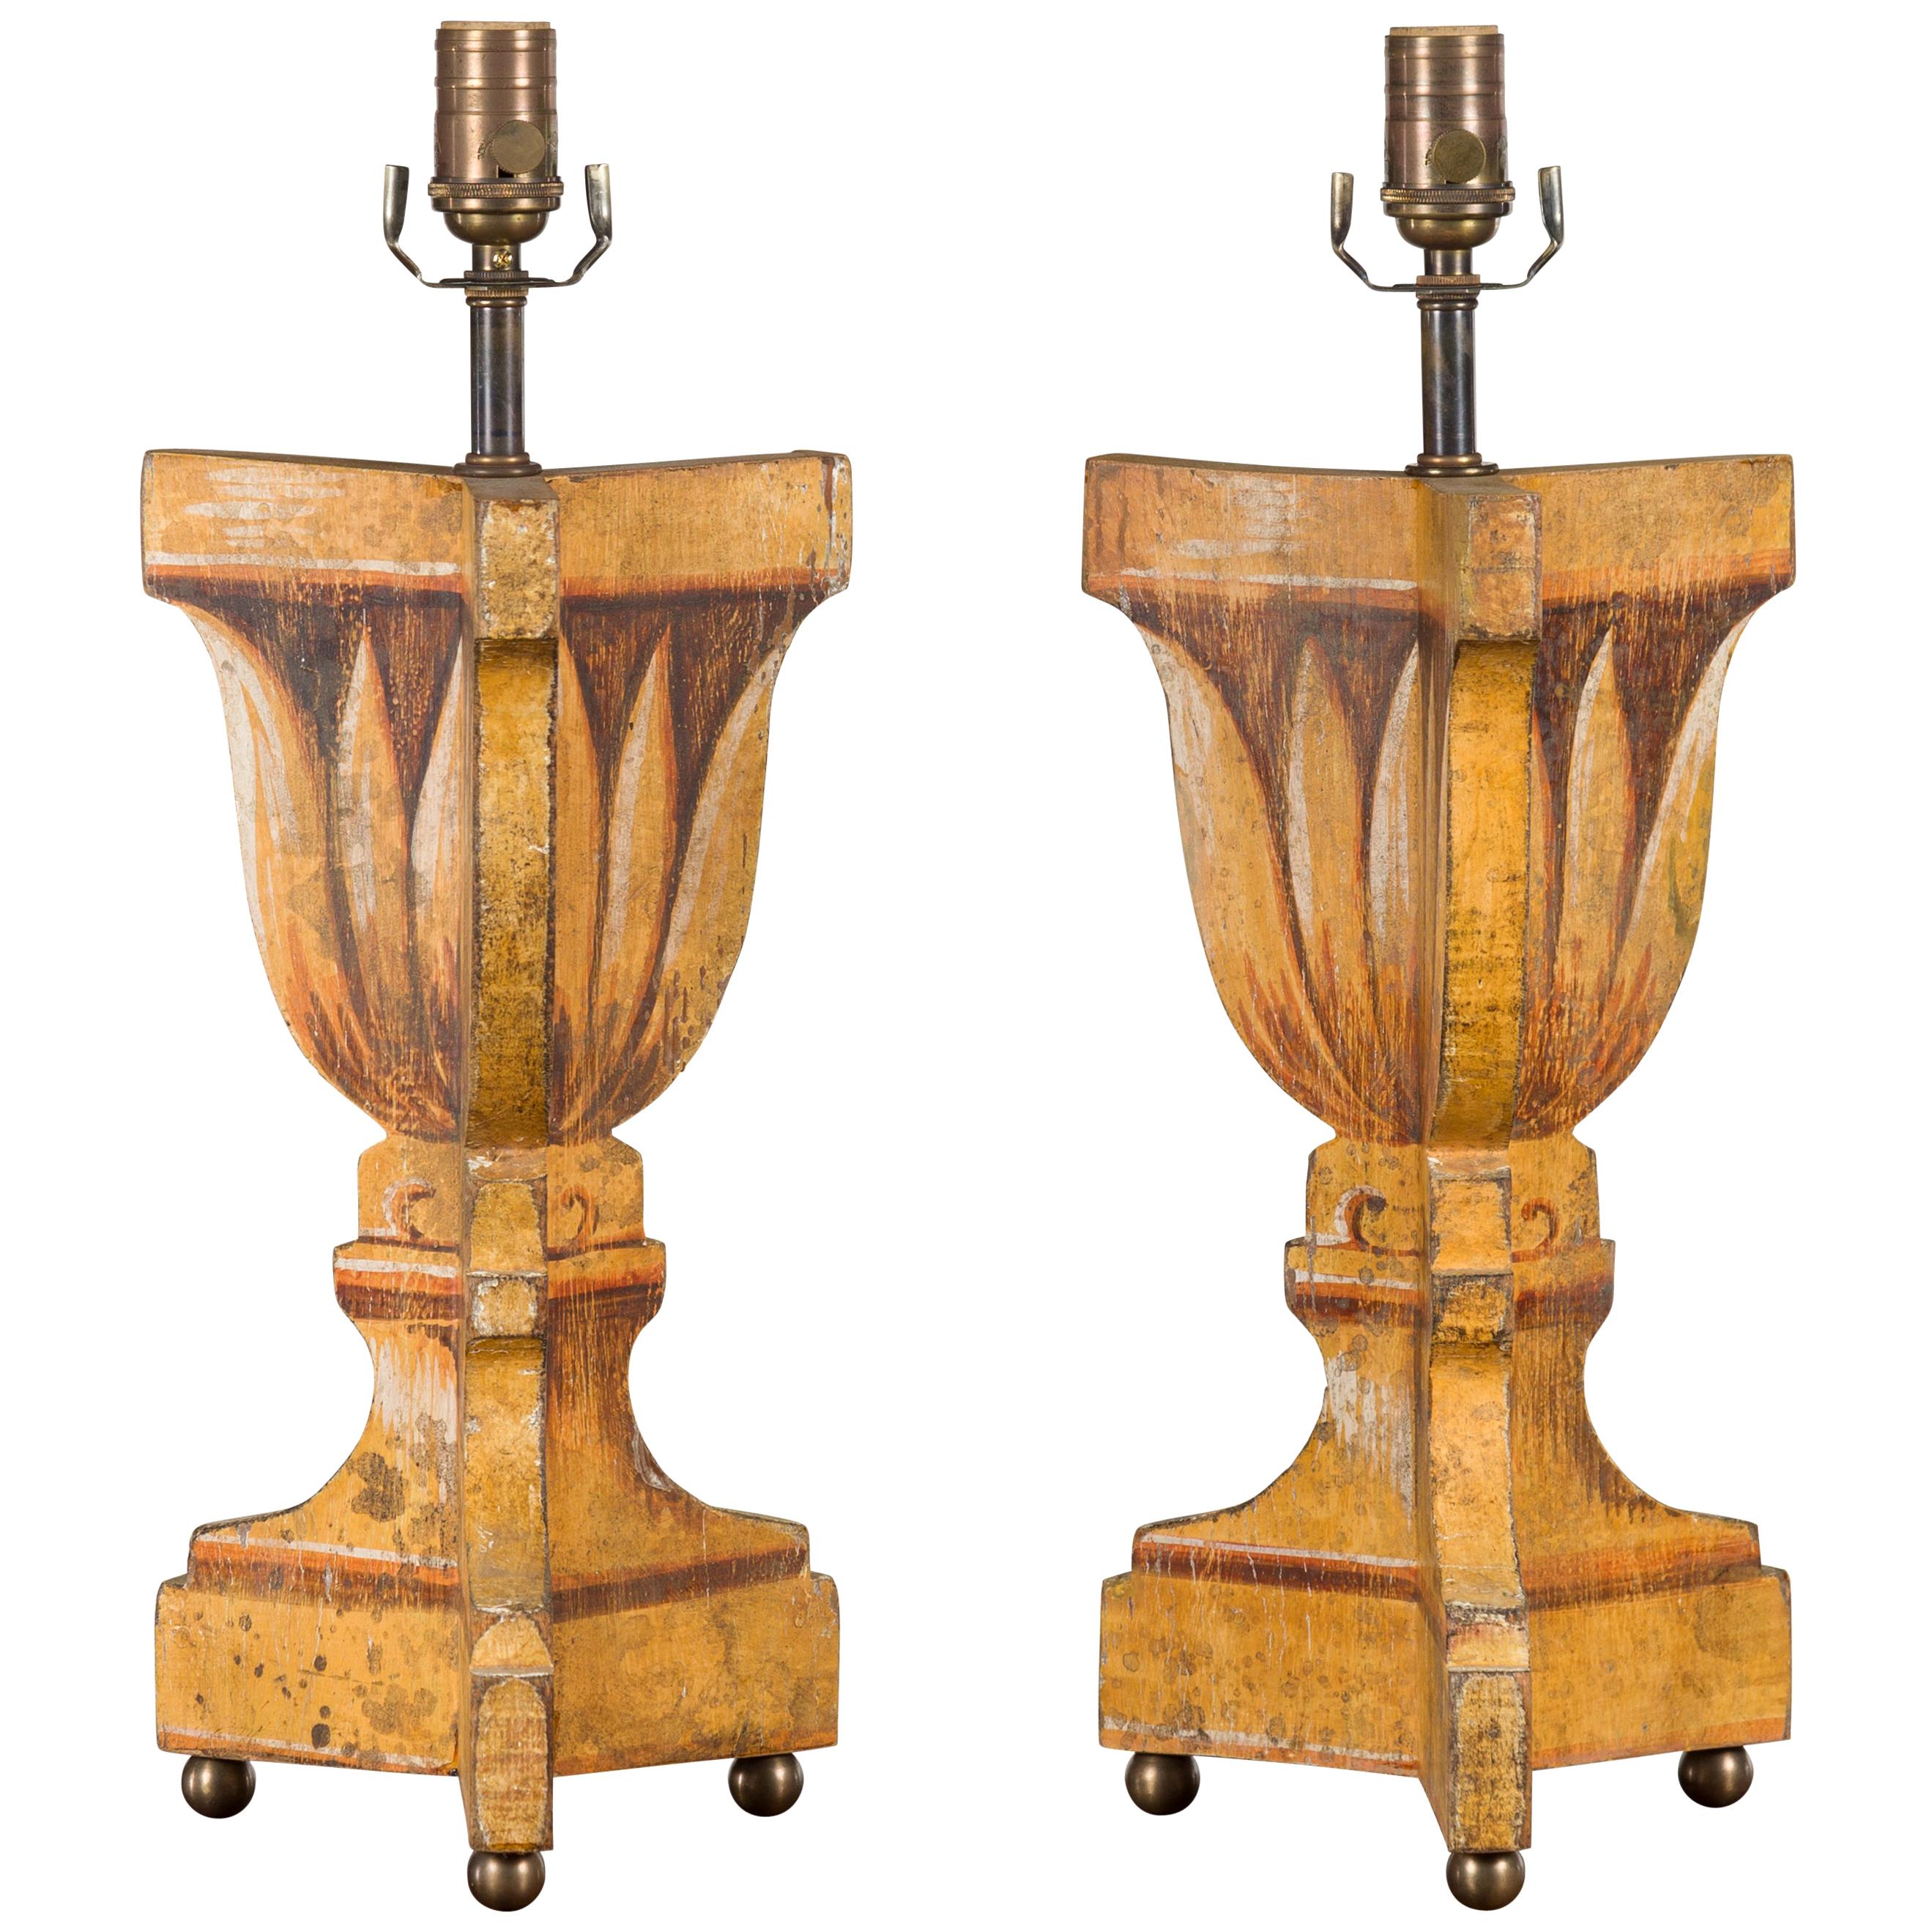 Paire de lampes de bureau italiennes du milieu du siècle dernier peintes et sculptées avec feuillage stylisé